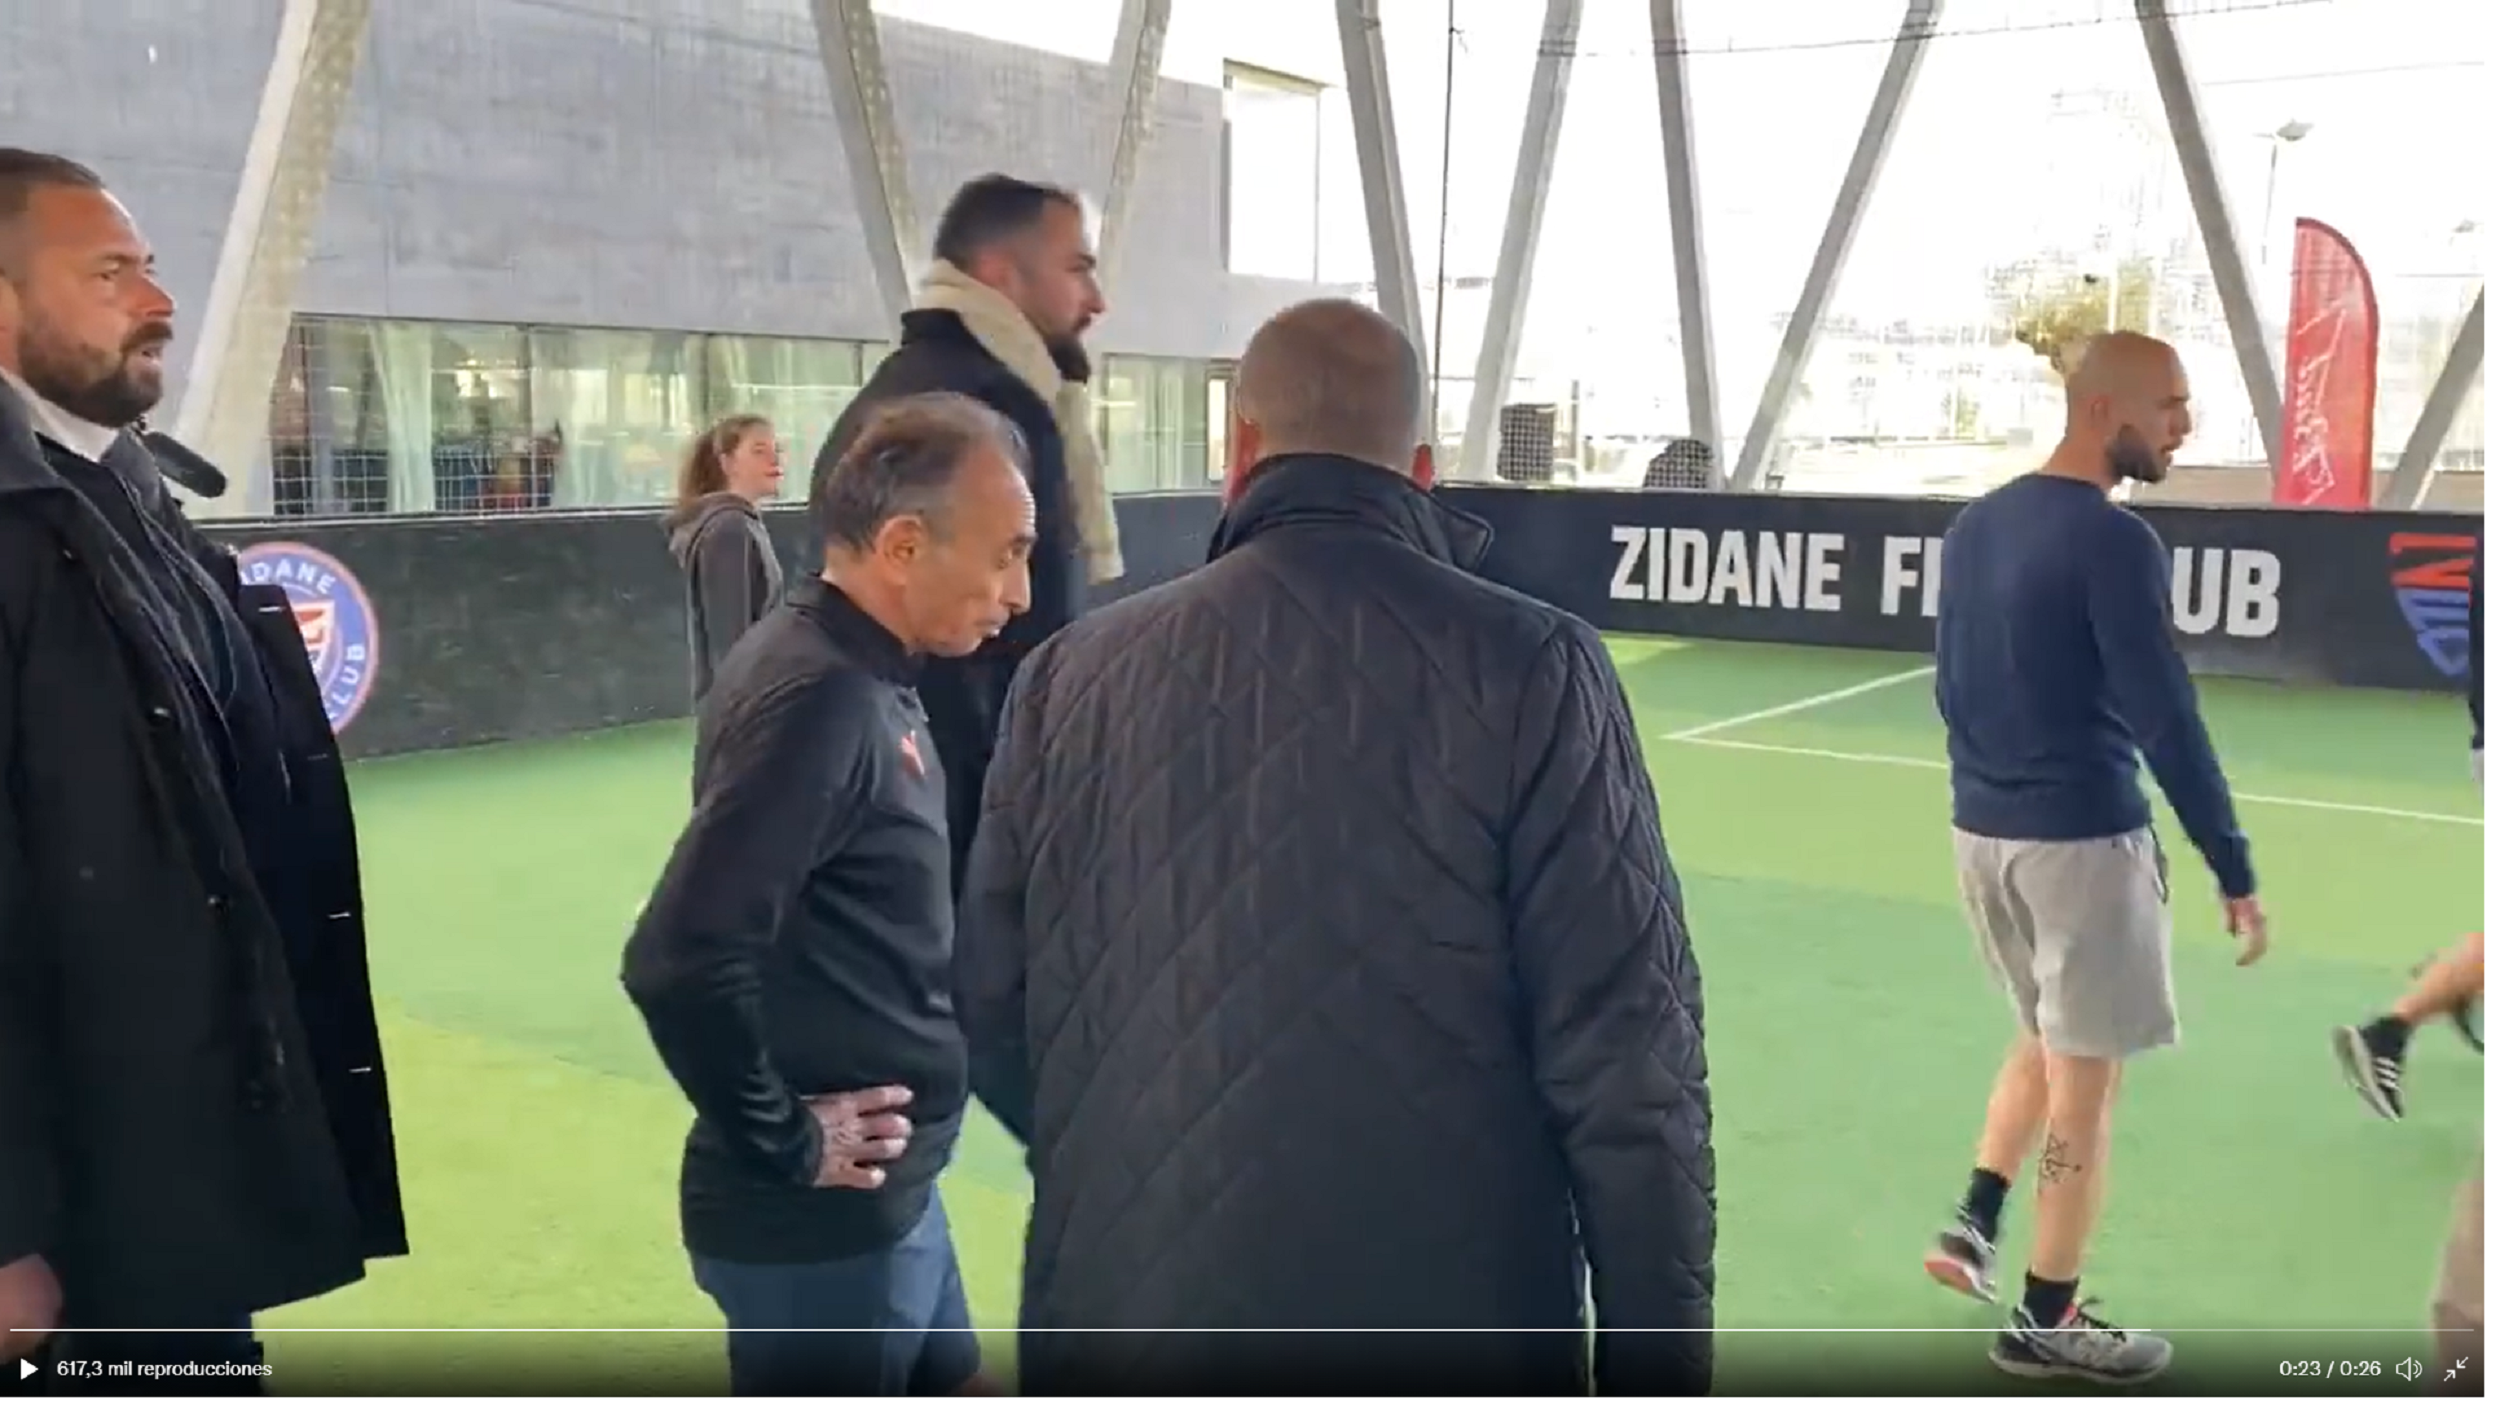 El hermano de Zidane expulsa el ultra Zemmour de un partido de fútbol: "¡Váyase!"